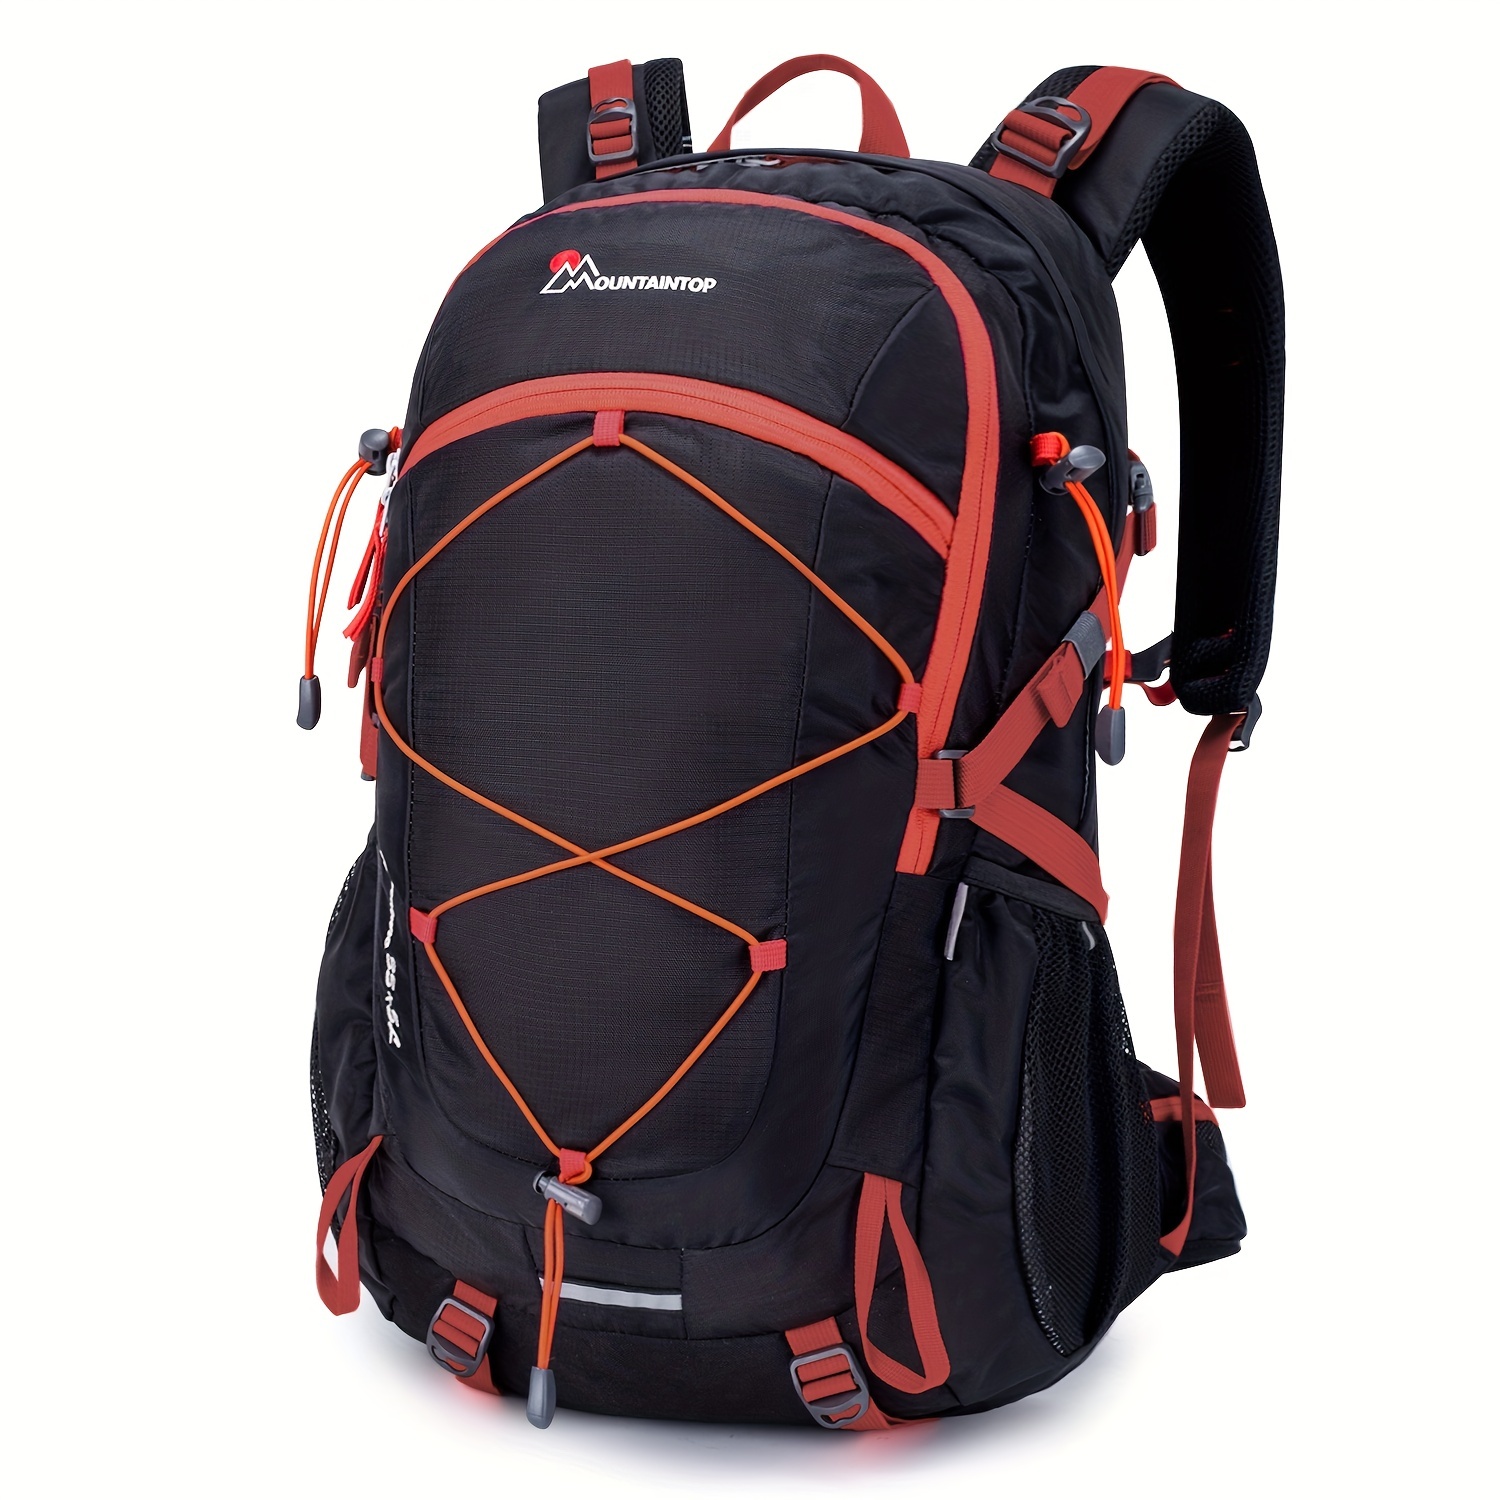 Shop Hiking Backpack 50L Waterproof Huwaijian – Luggage Factory